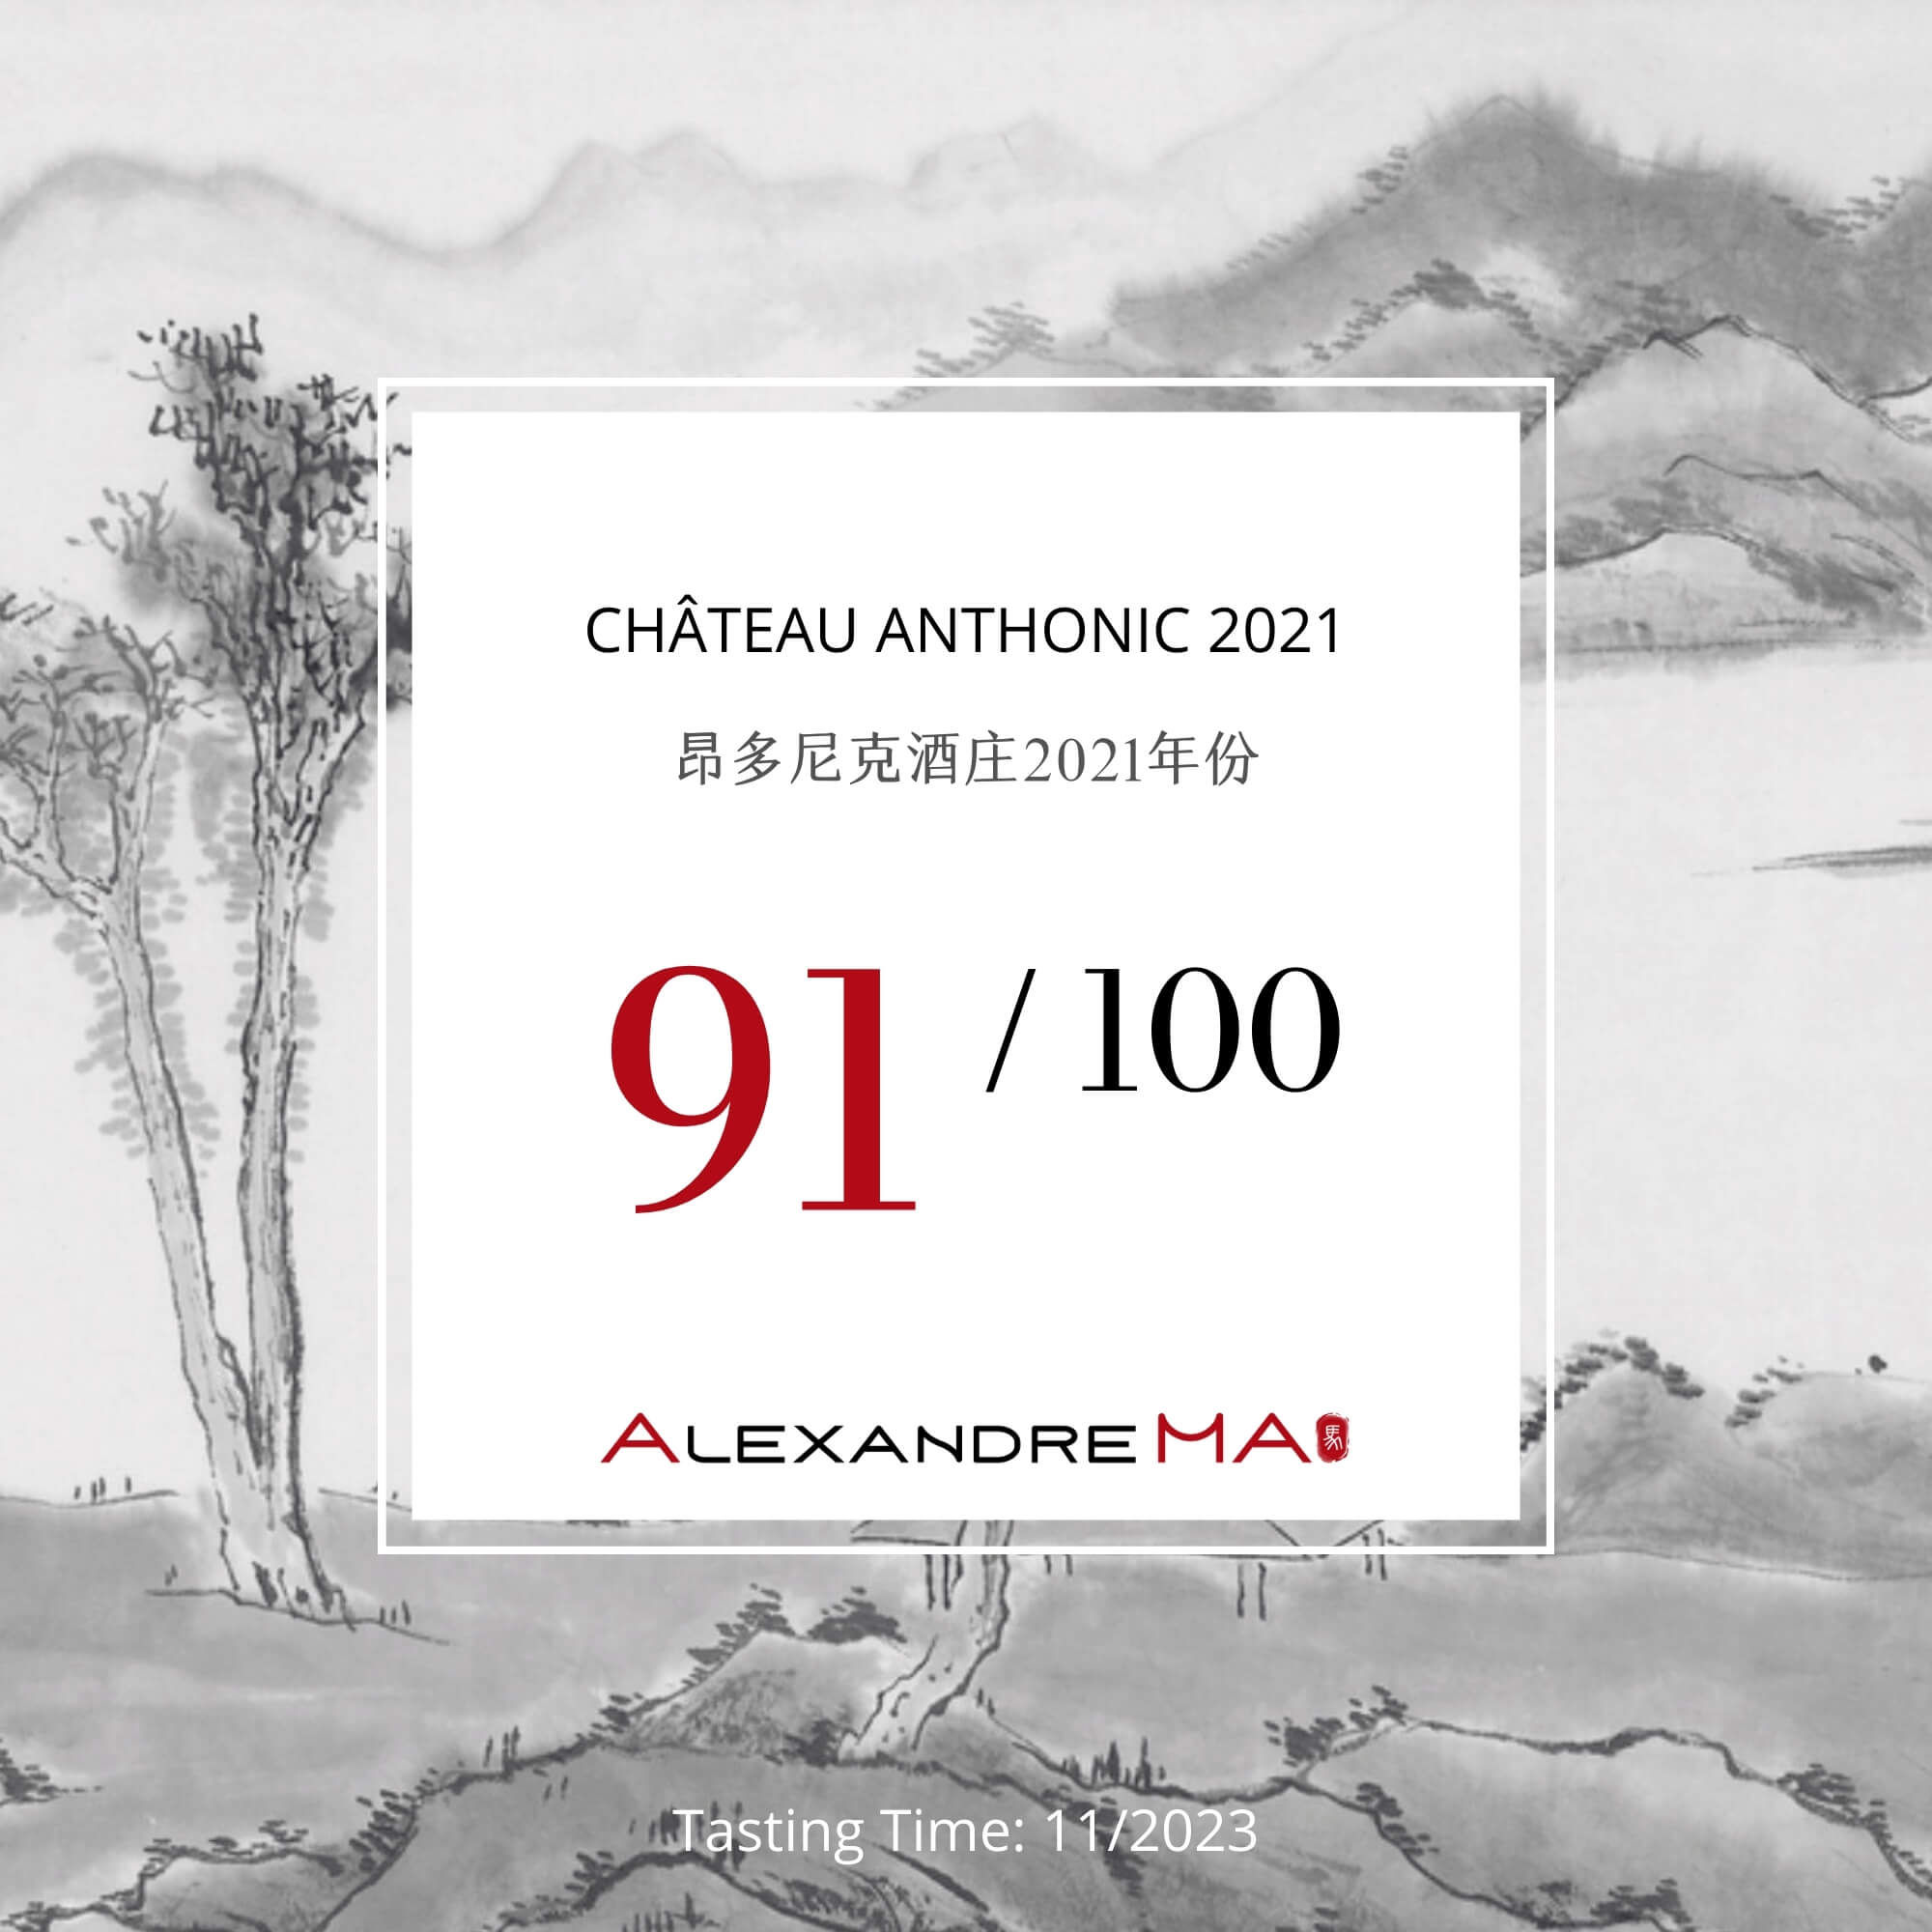 Château Anthonic 2021 - Alexandre MA